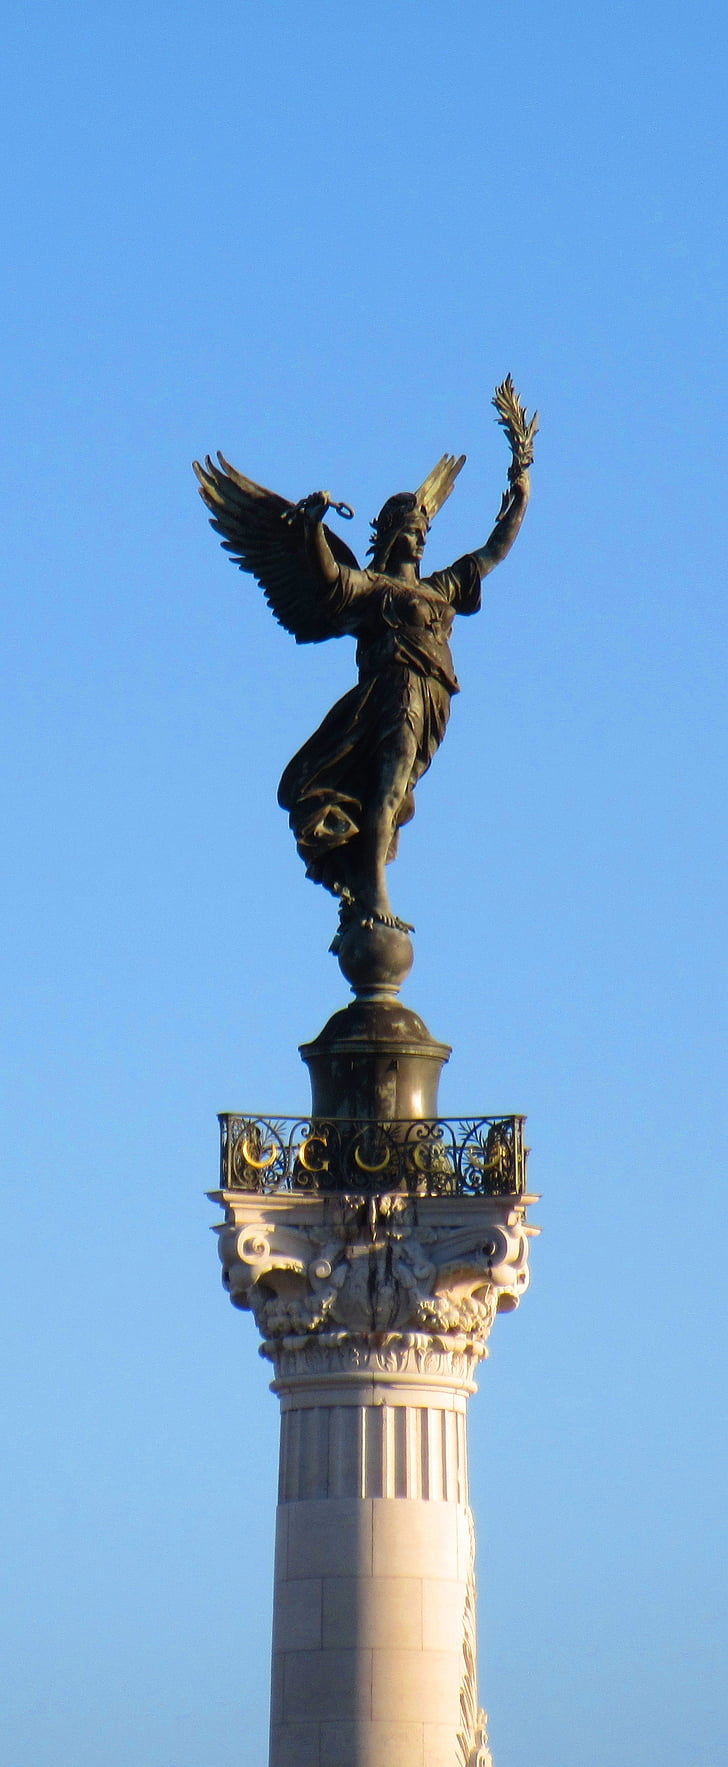 quincunxes, bức tượng, Đài tưởng niệm, Bordeaux, cột, lịch sử, tác phẩm điêu khắc